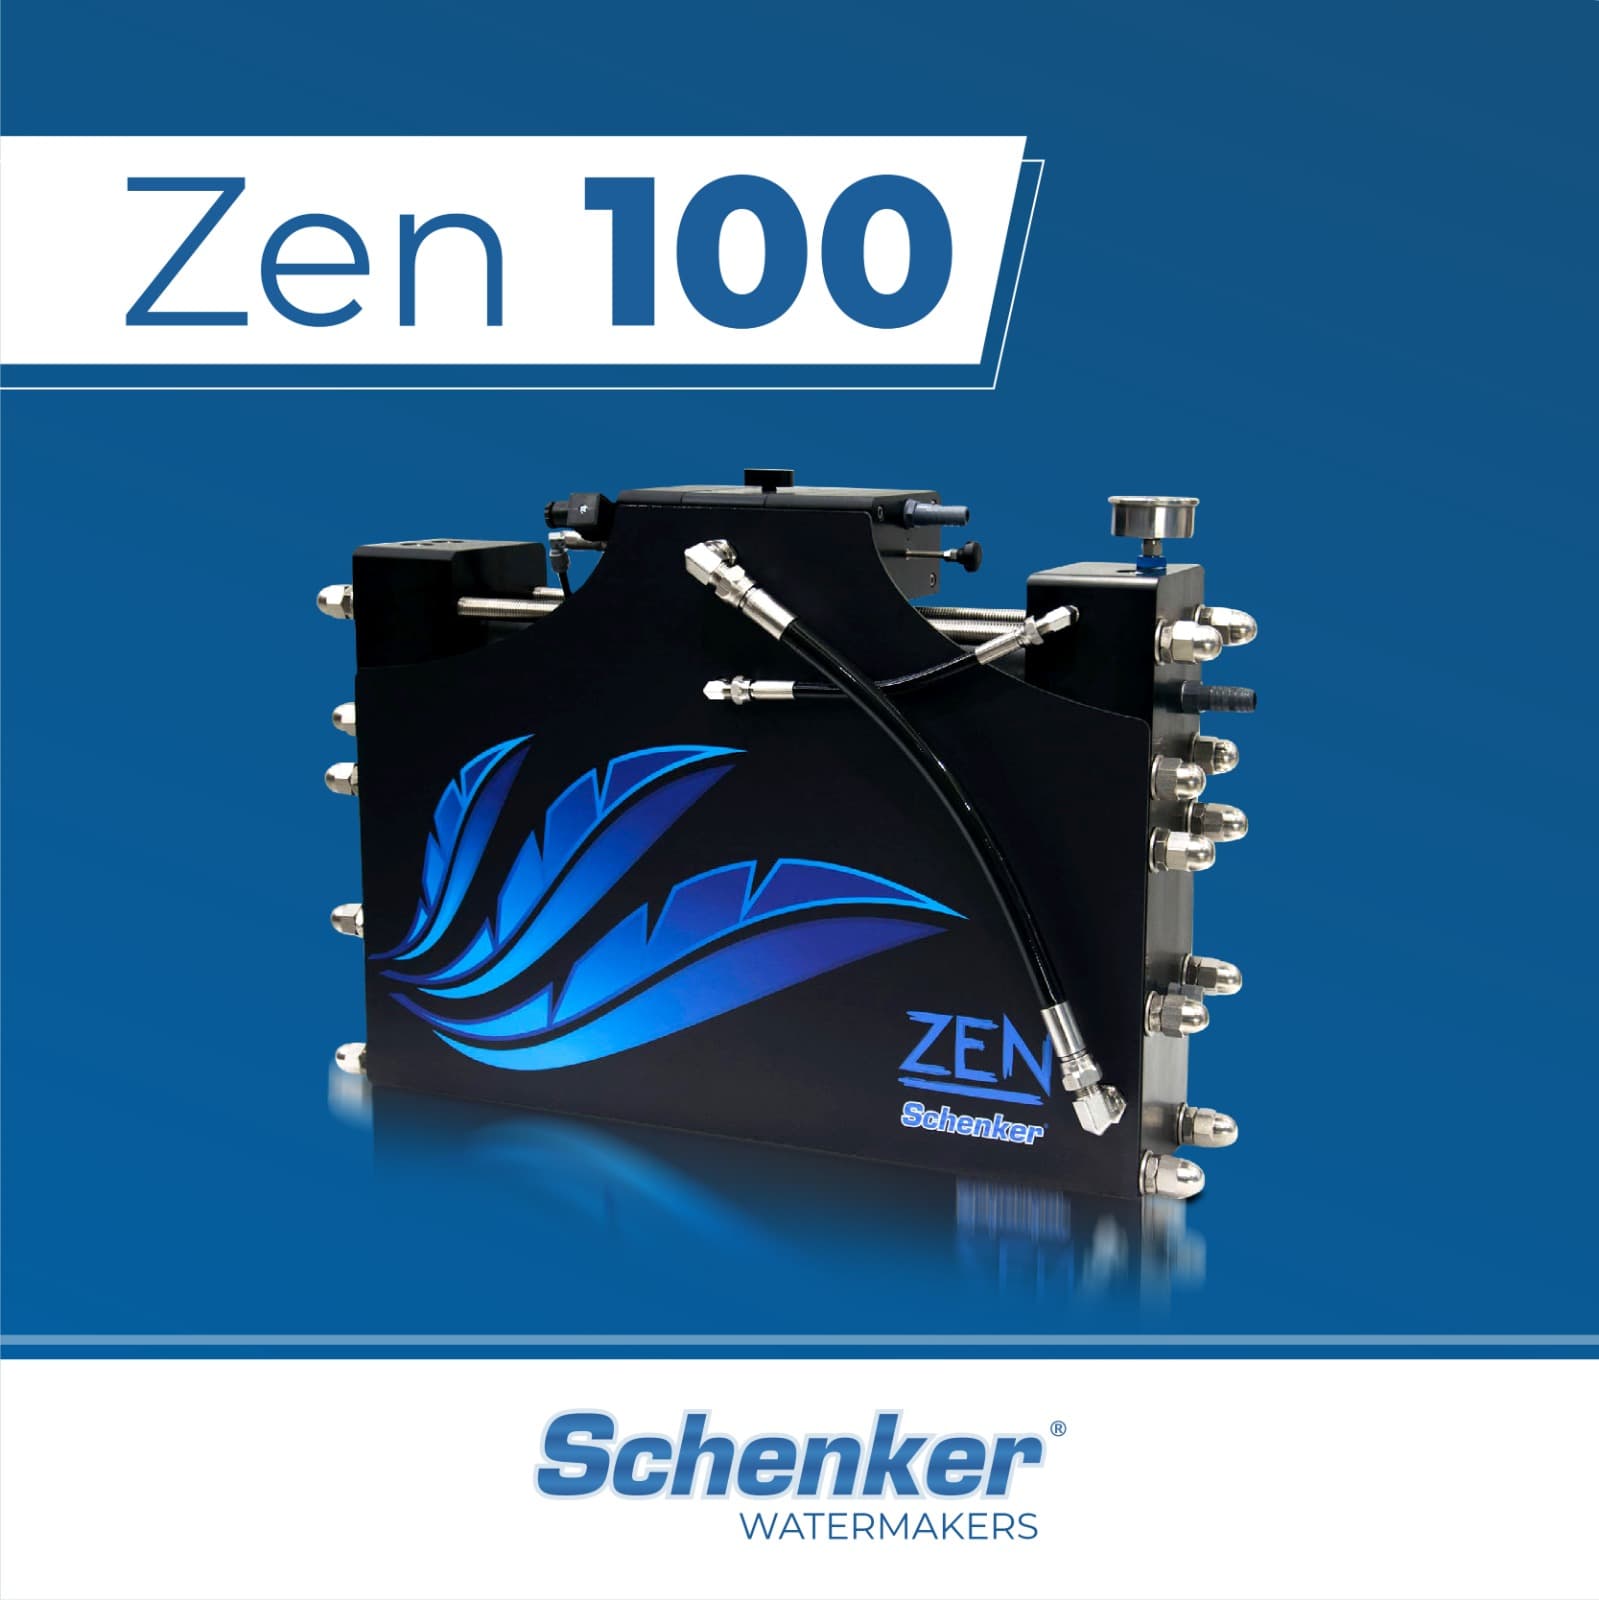 Zen 100